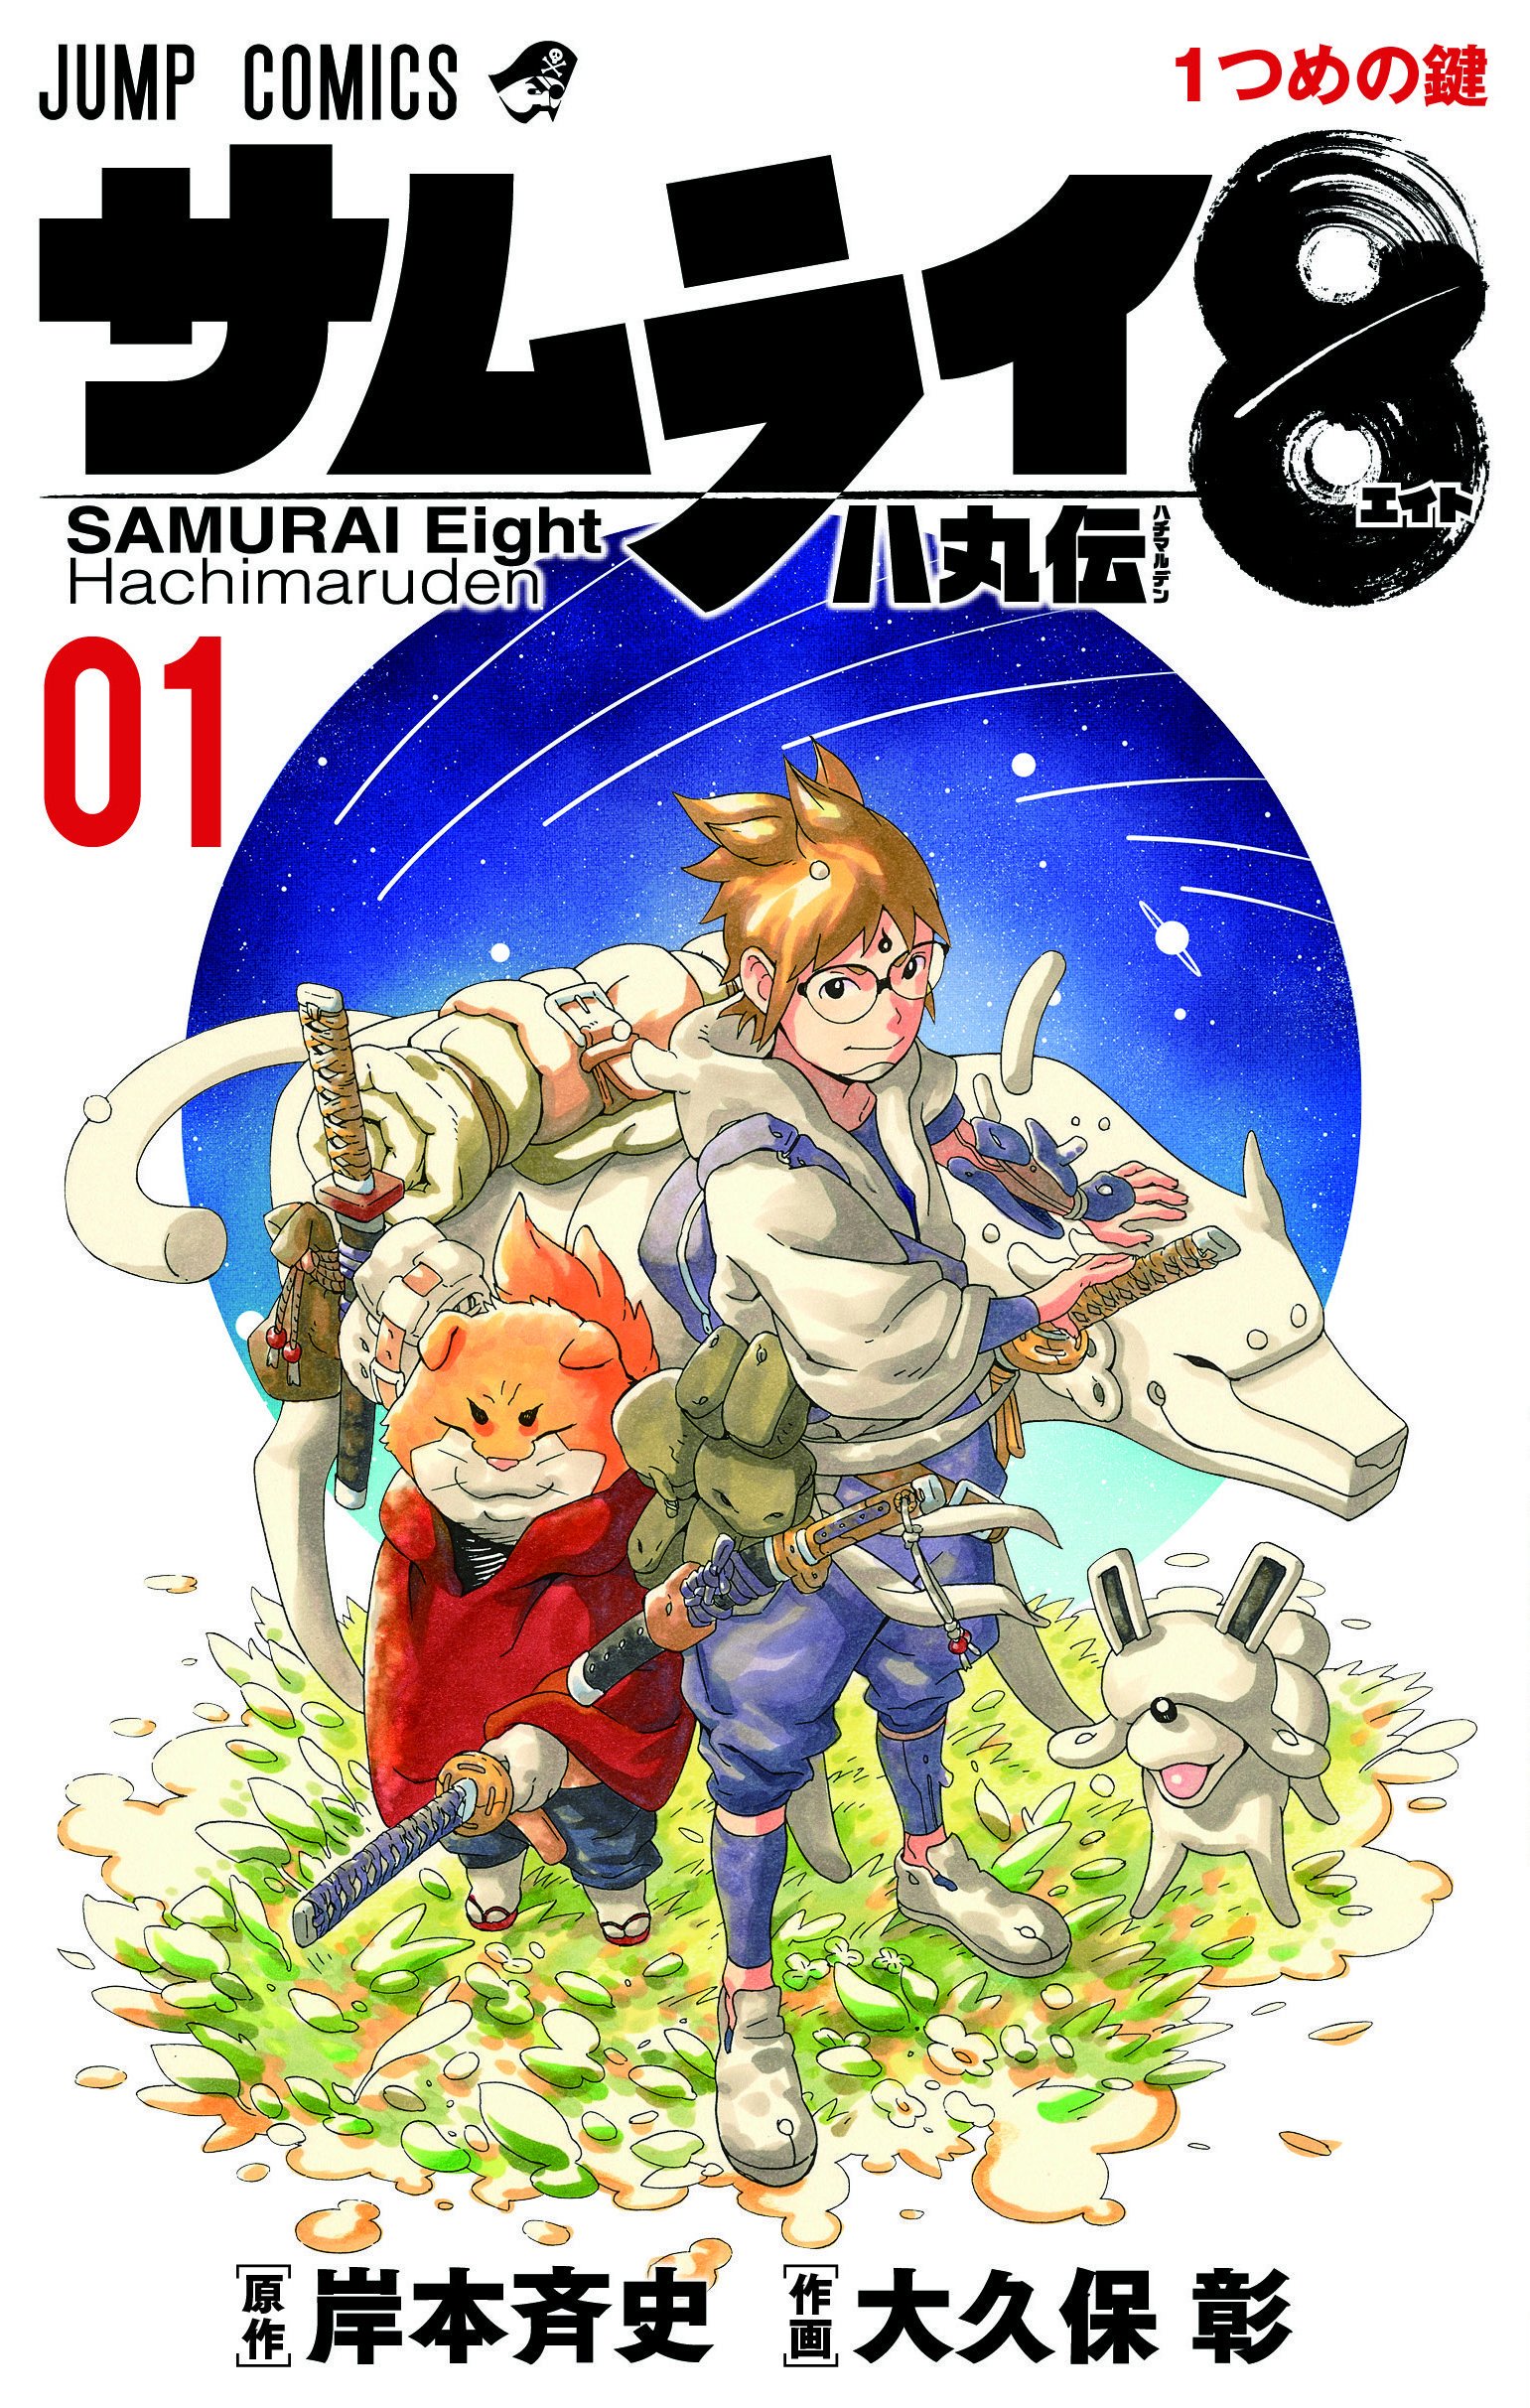 Samurai 8: Hachimaruden cover